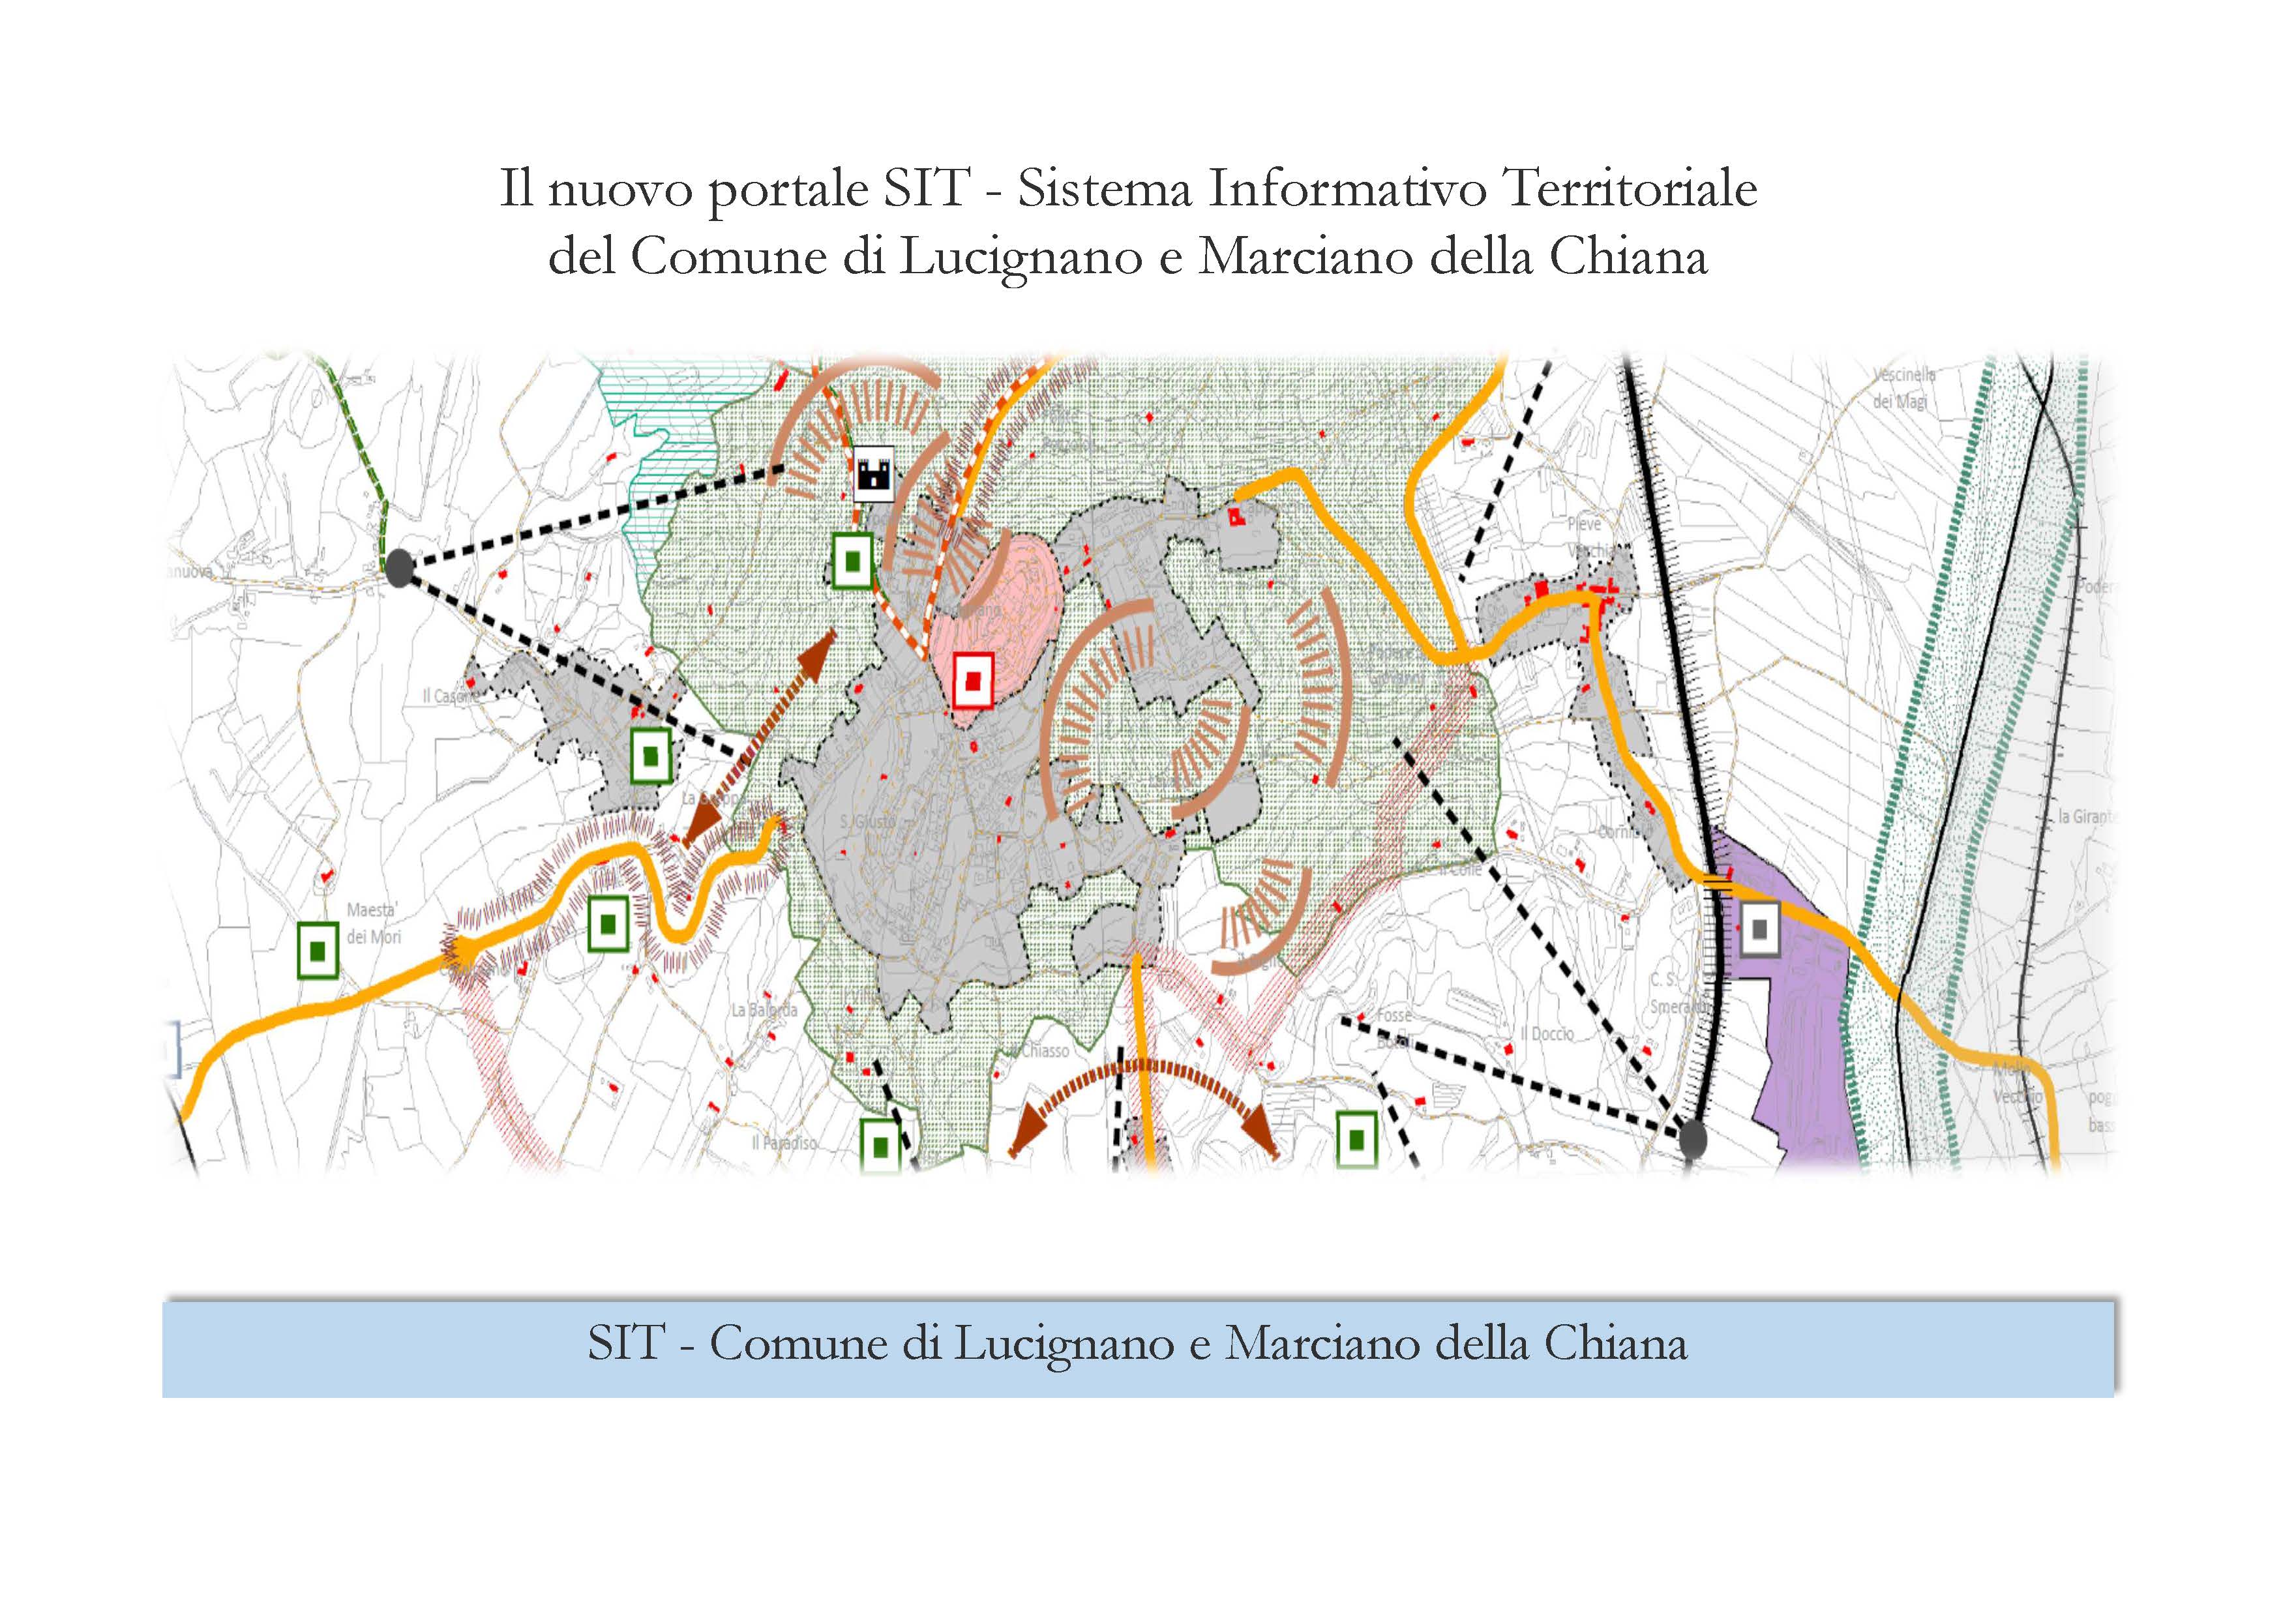 Il nuovo portale SIT - Sistema Informativo Territoriale del Comune di Lucignano e Marciano della Chiana